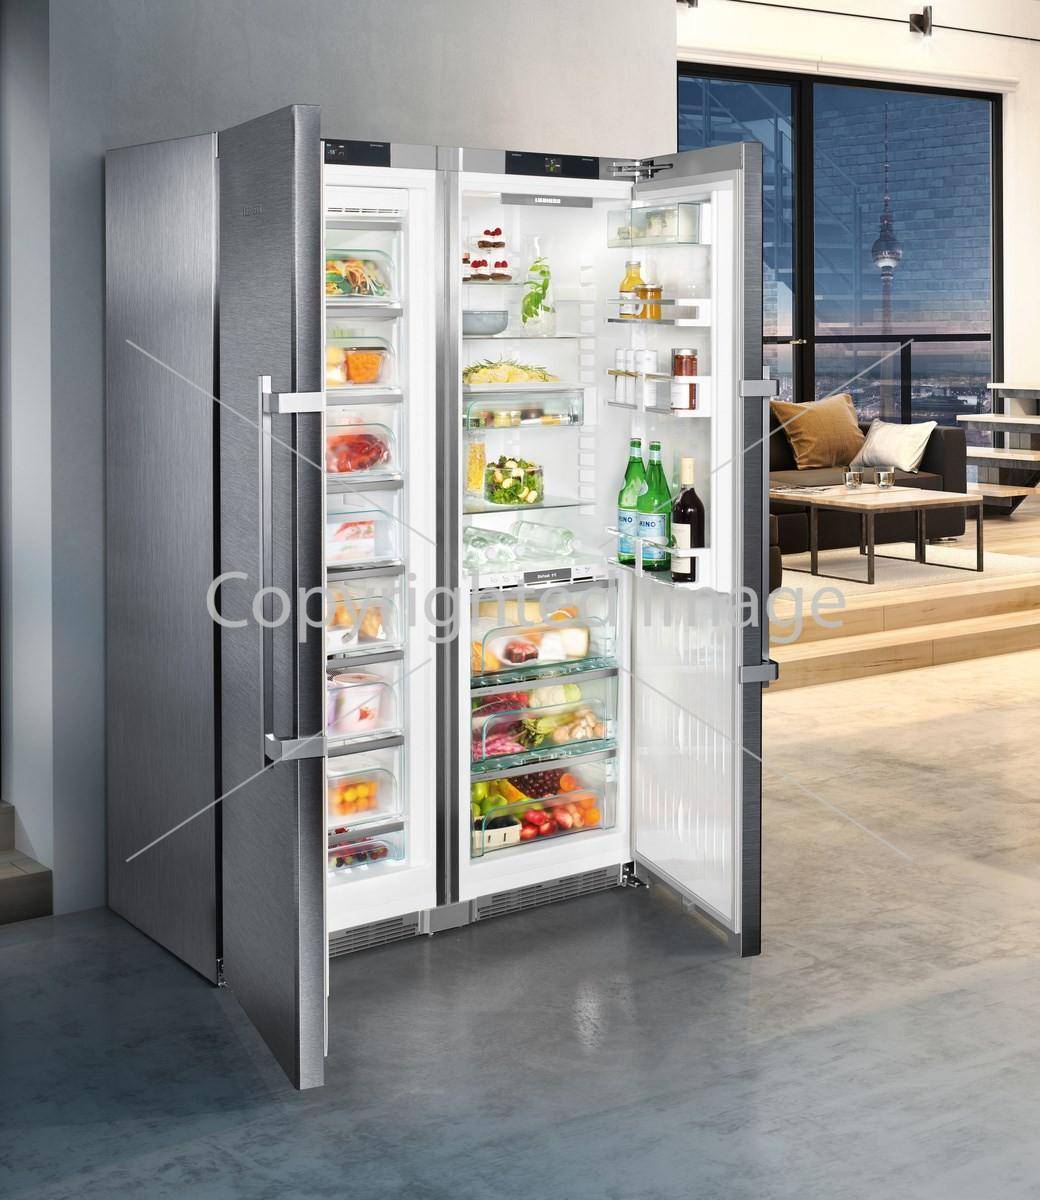 Умный двухстворчатый холодильник – максимум комфорта на кухне